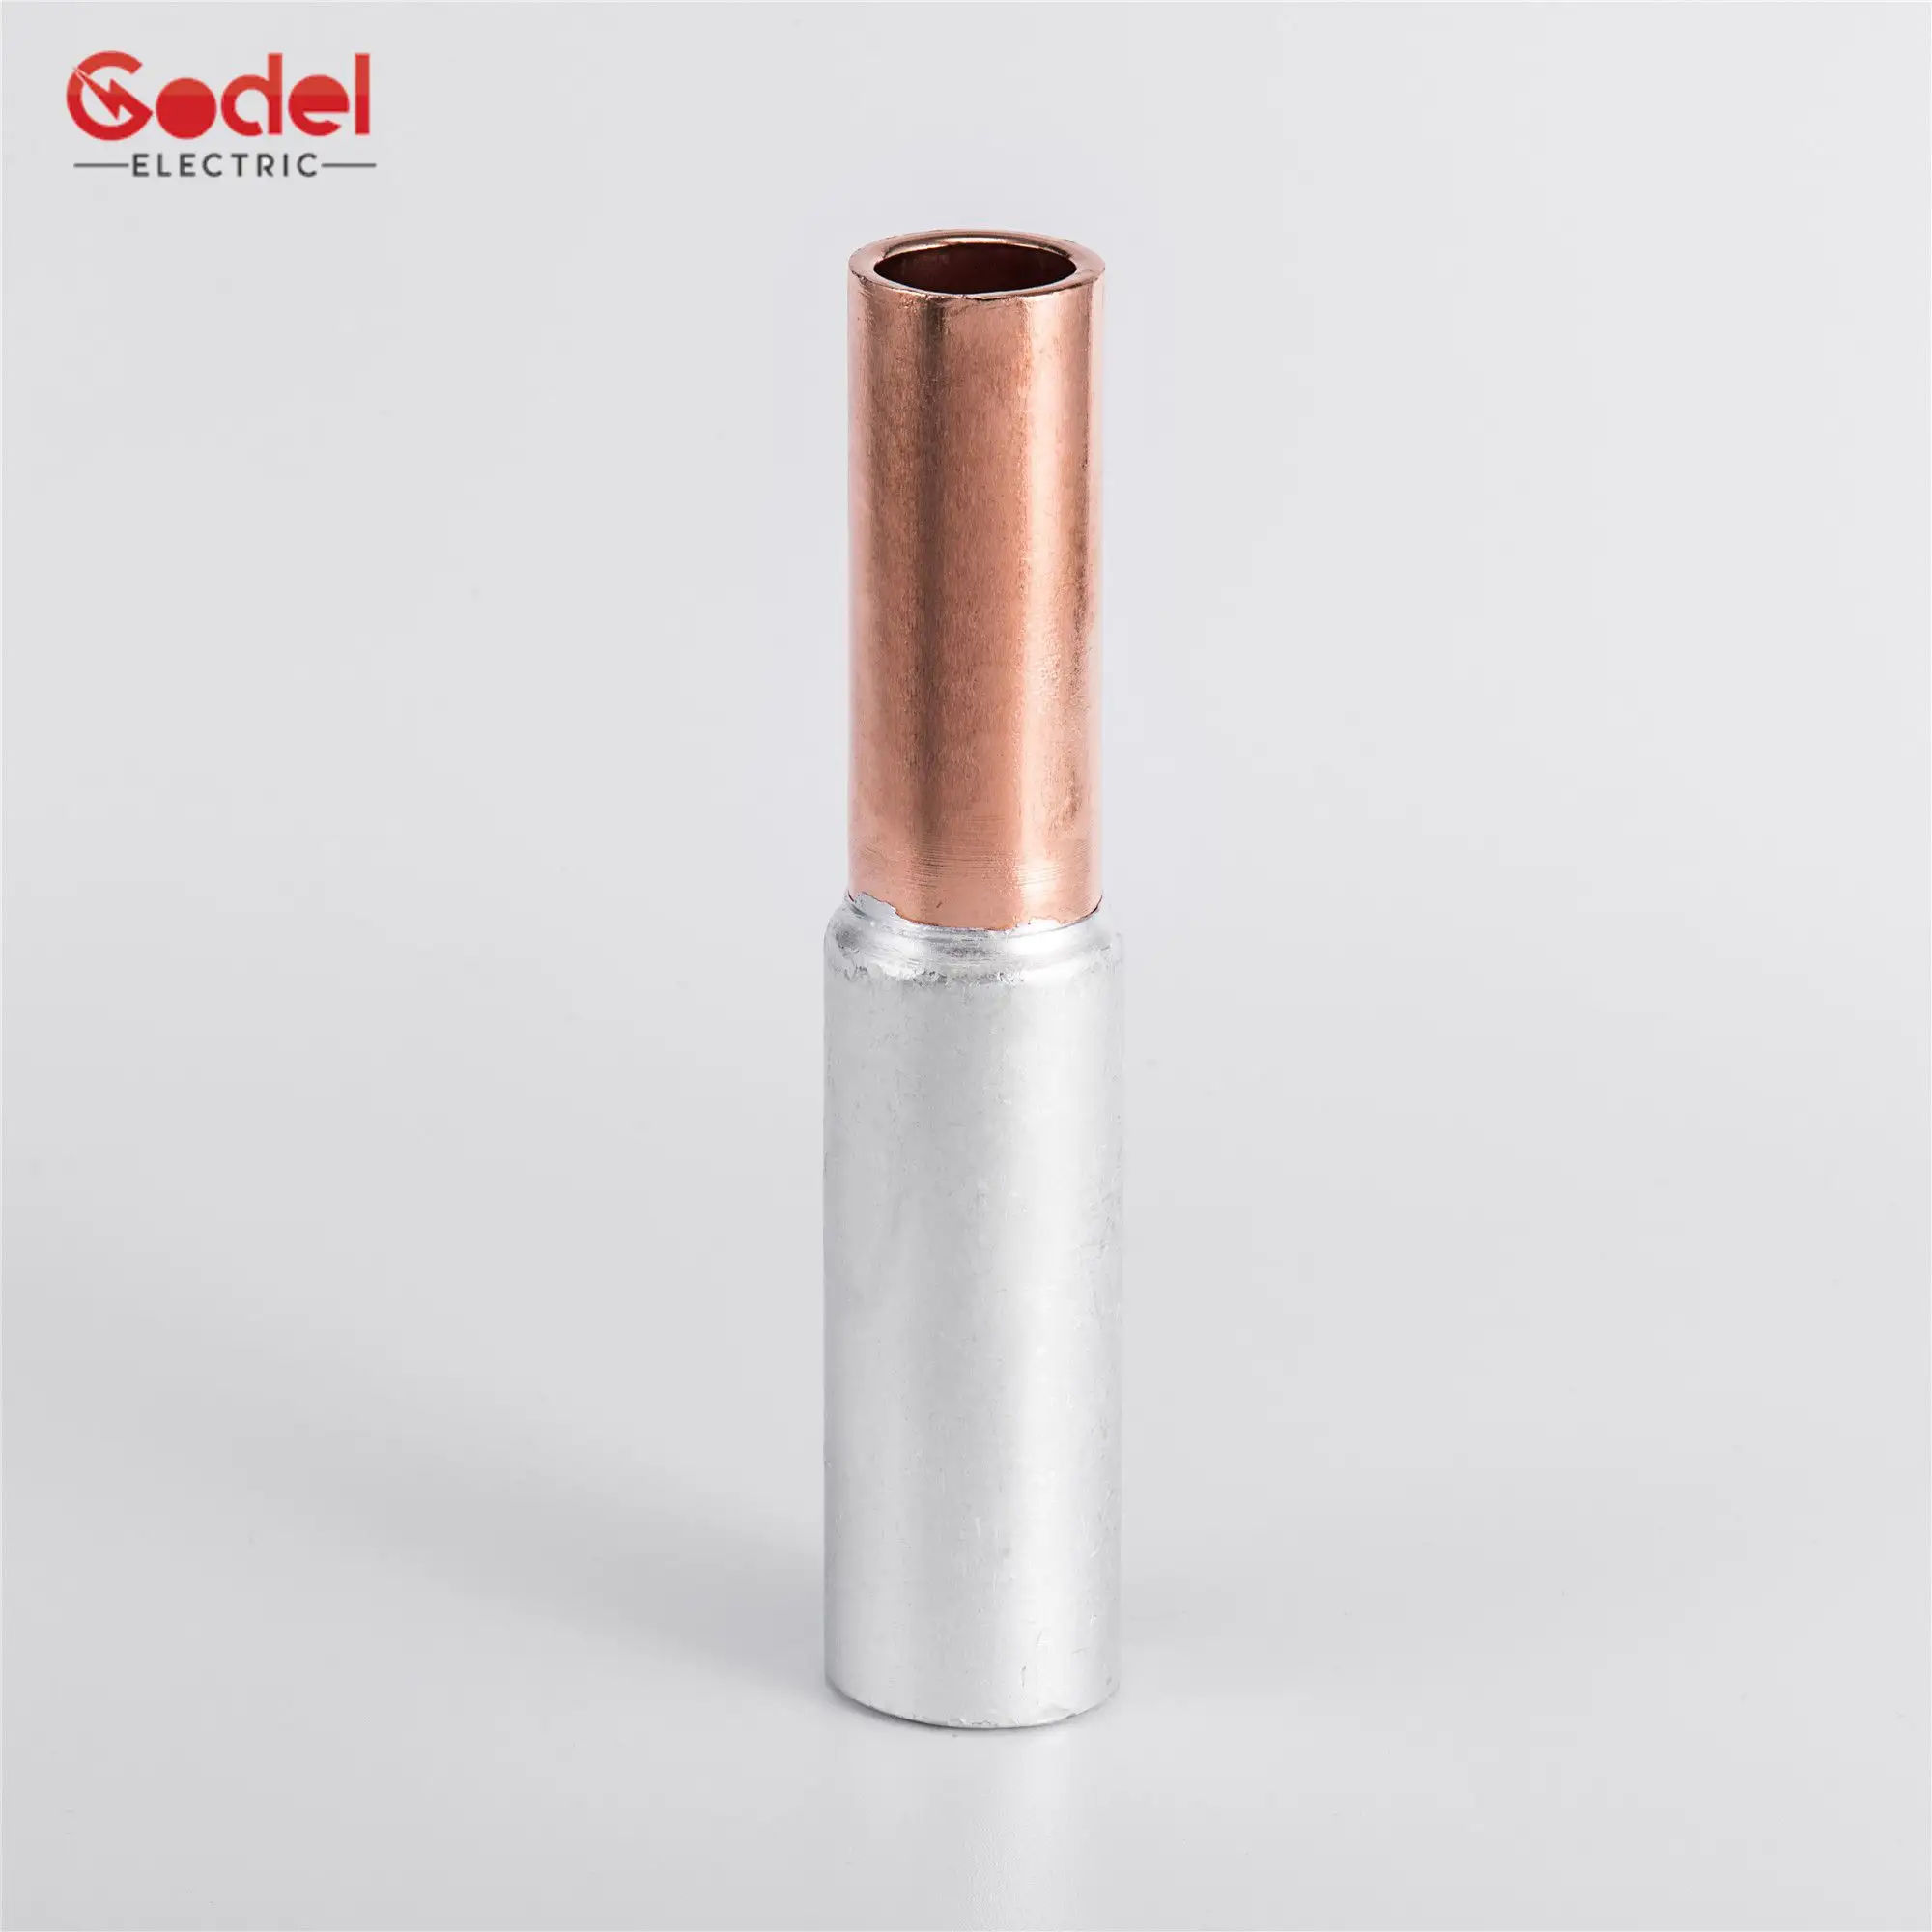 Copper Bimetal GTL Type Bimetallic Crimp Aluminium Connector